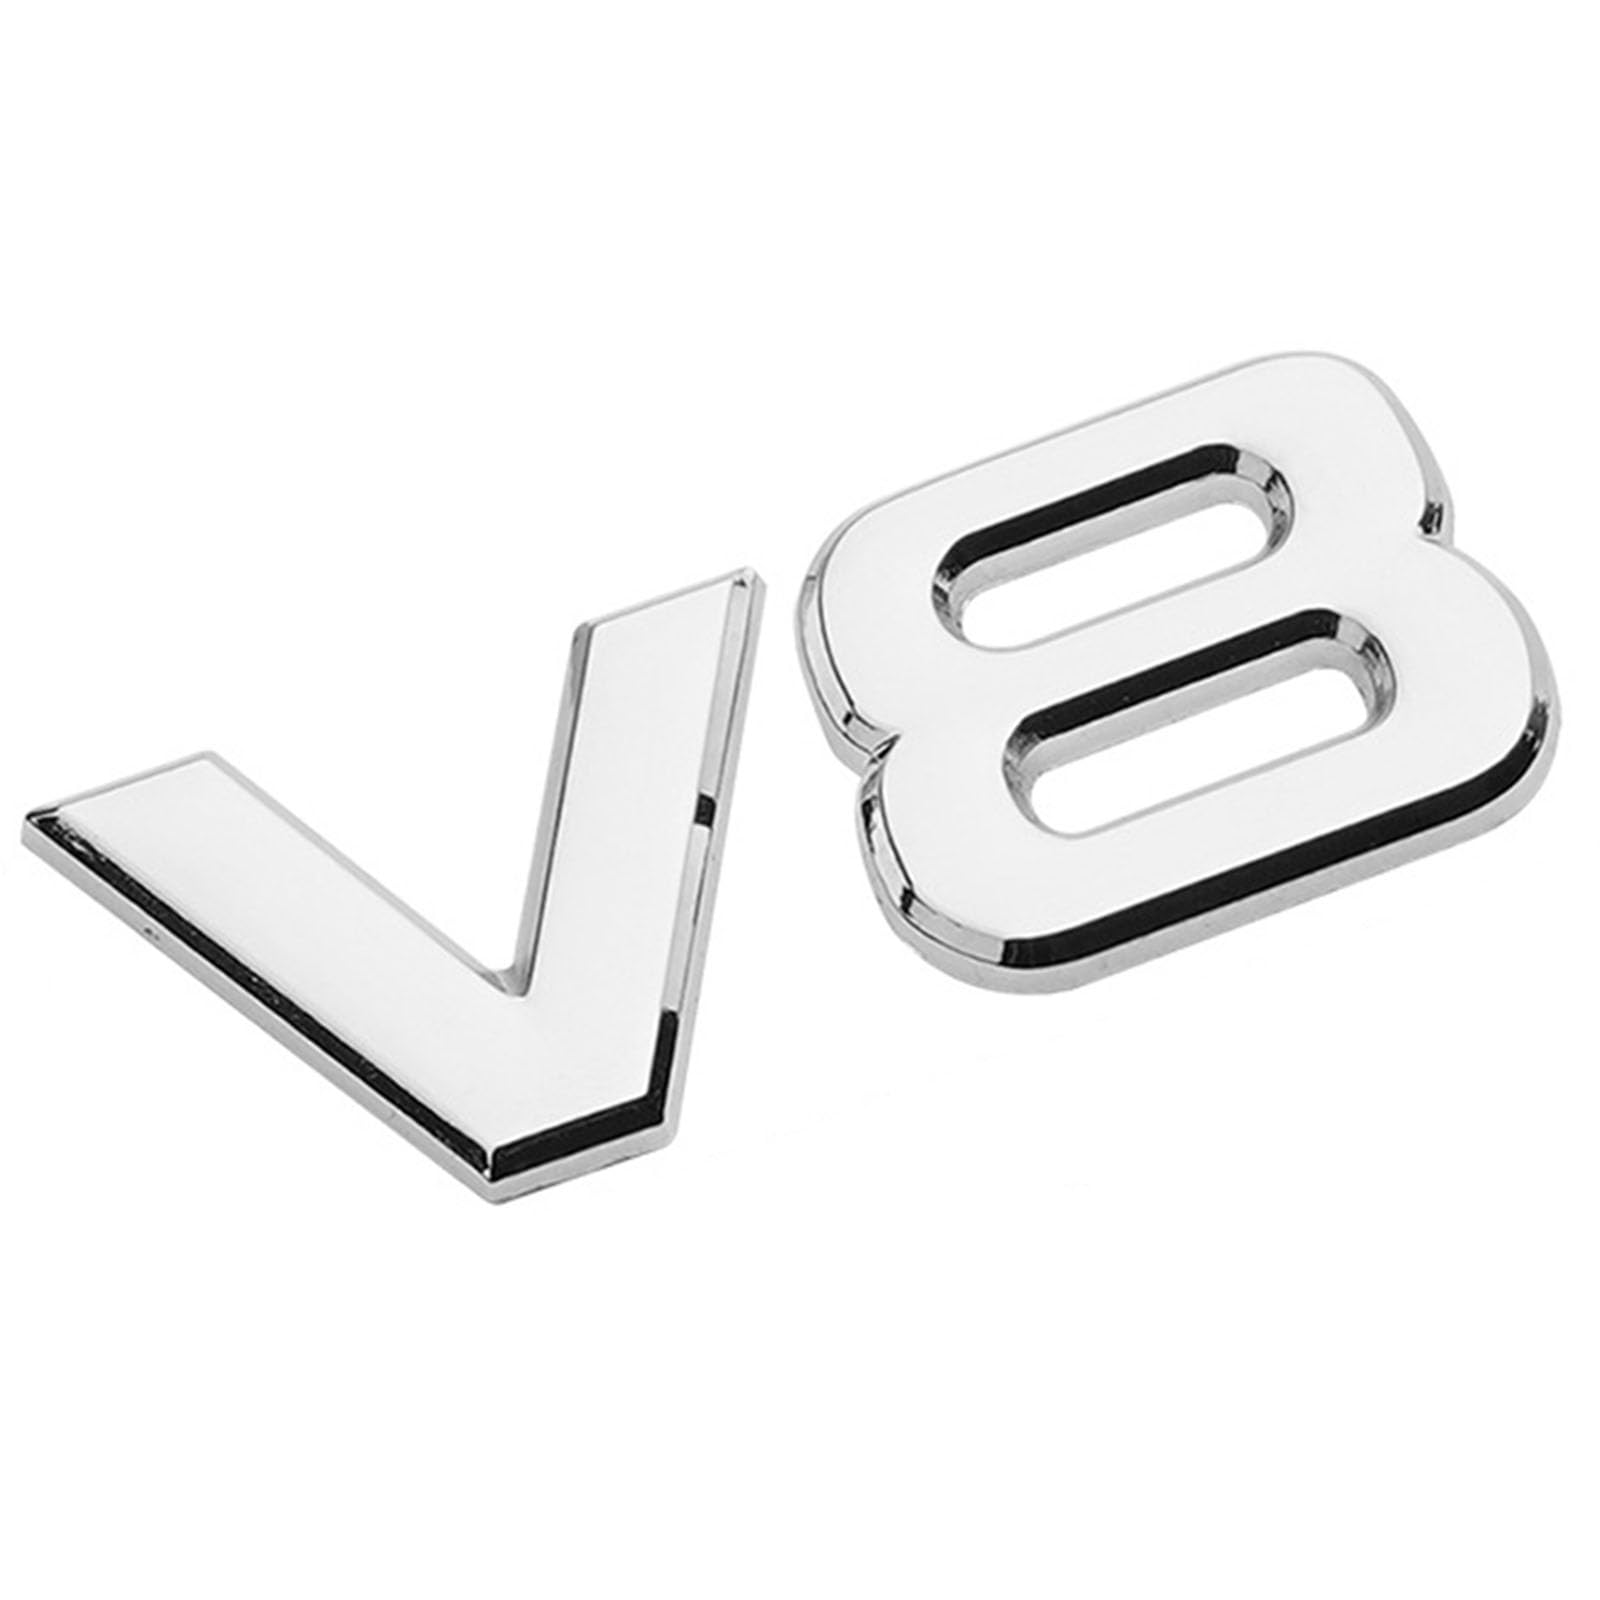 3D Metall Auto Aufkleber für V6 V8, Selbstklebend Logo Emblem Badge Abzeichen für Heckklappe Kofferraum, Chrom Autoaufkleber zubehör,G von MOOWI